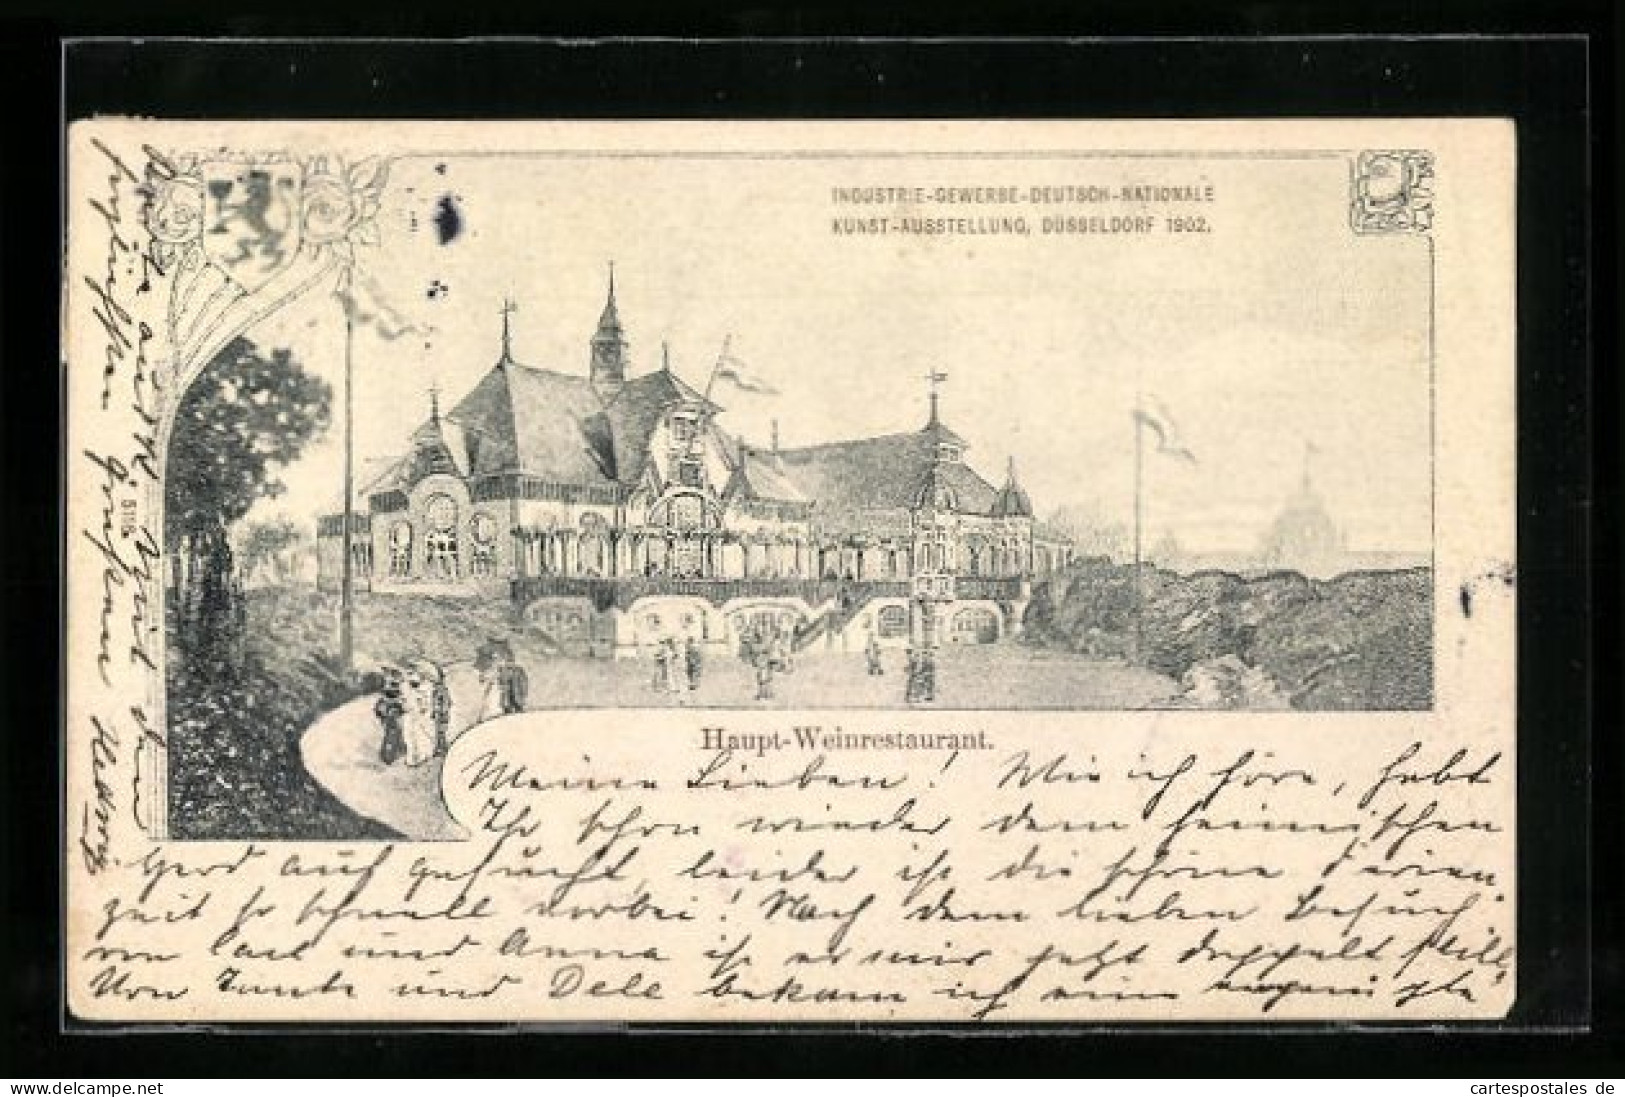 AK Düsseldorf, Industrie-, Gewerbe-, Deutsch- Nationale Kunstausstellung 1902, Haupt-Weinrestaurant  - Tentoonstellingen